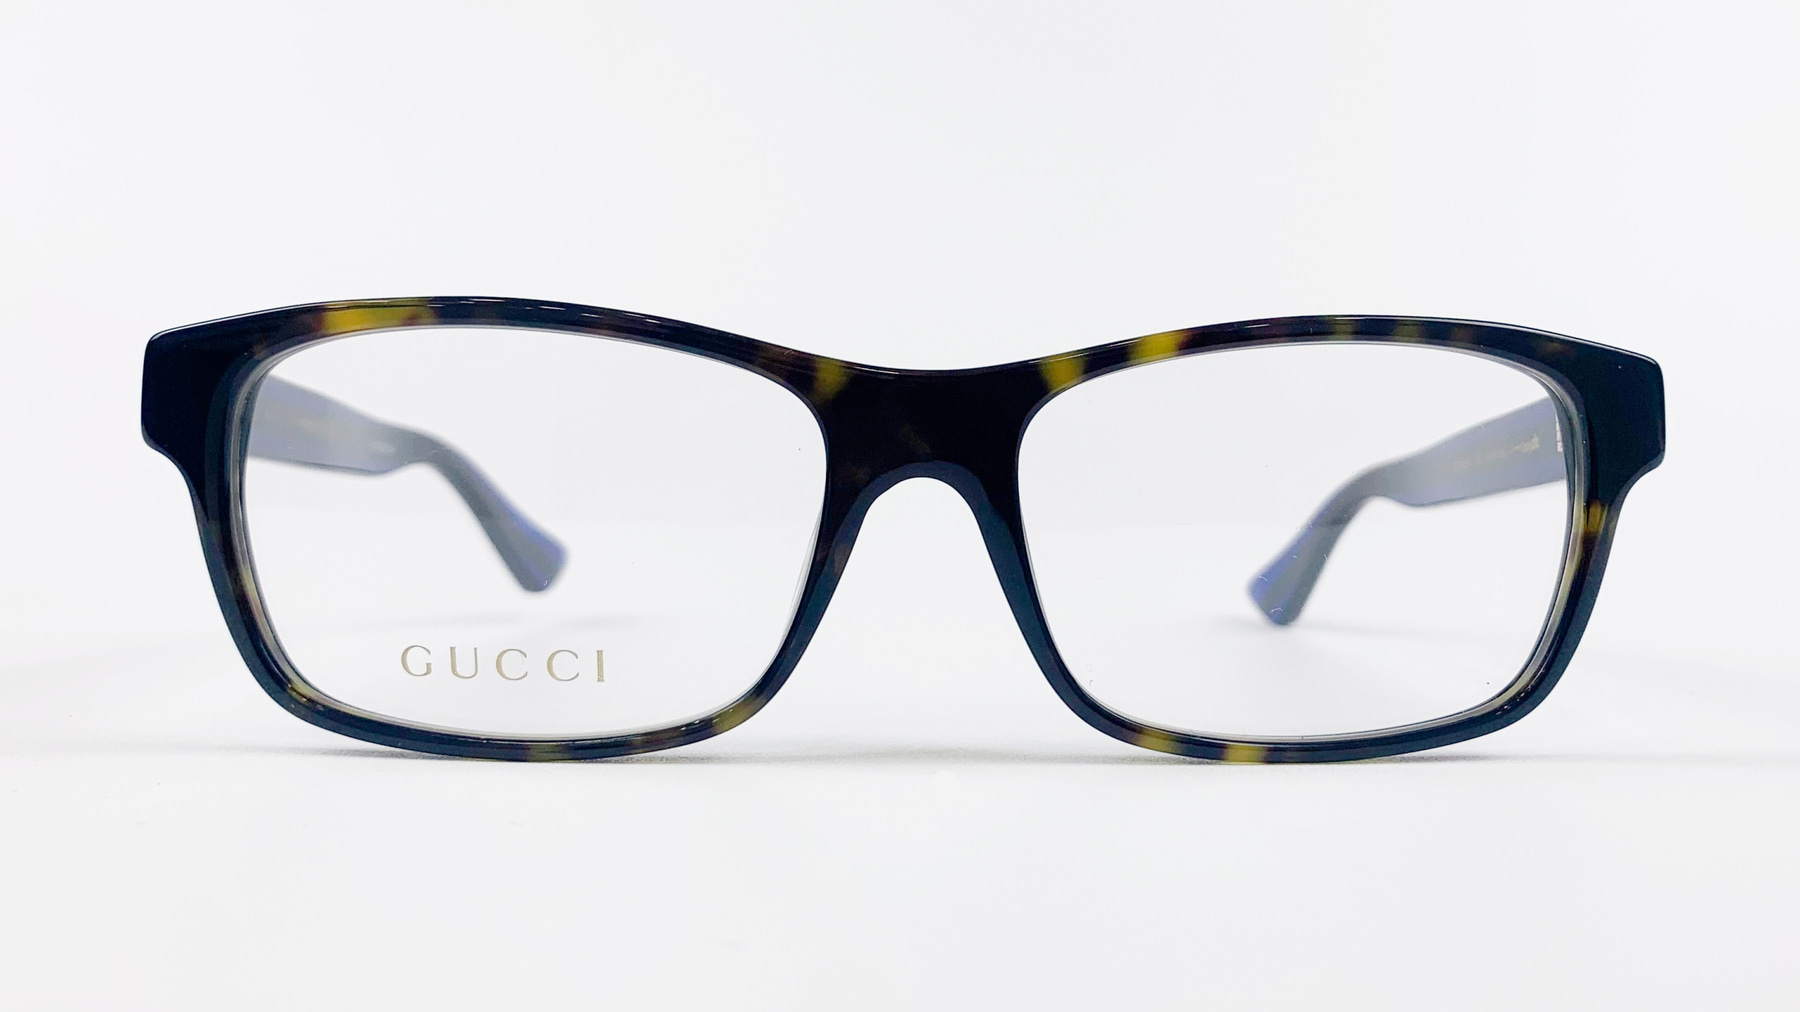 GUCCI GG00060A, Korean glasses, sunglasses, eyeglasses, glasses